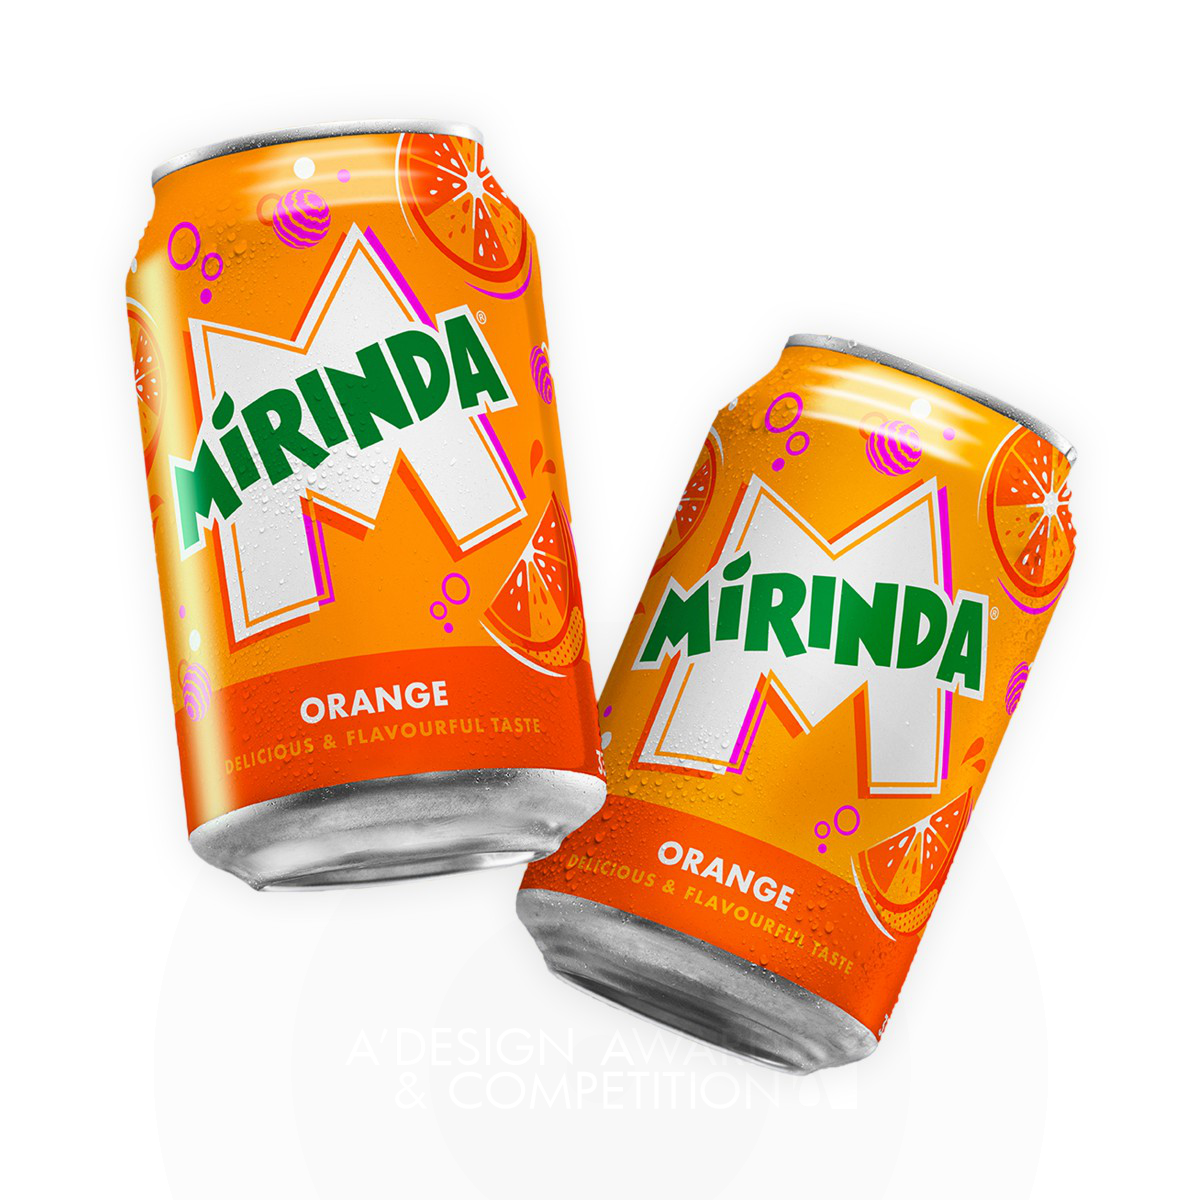 Mirinda Global Refresh Beverage Packaging  by PepsiCo Design and Innovation